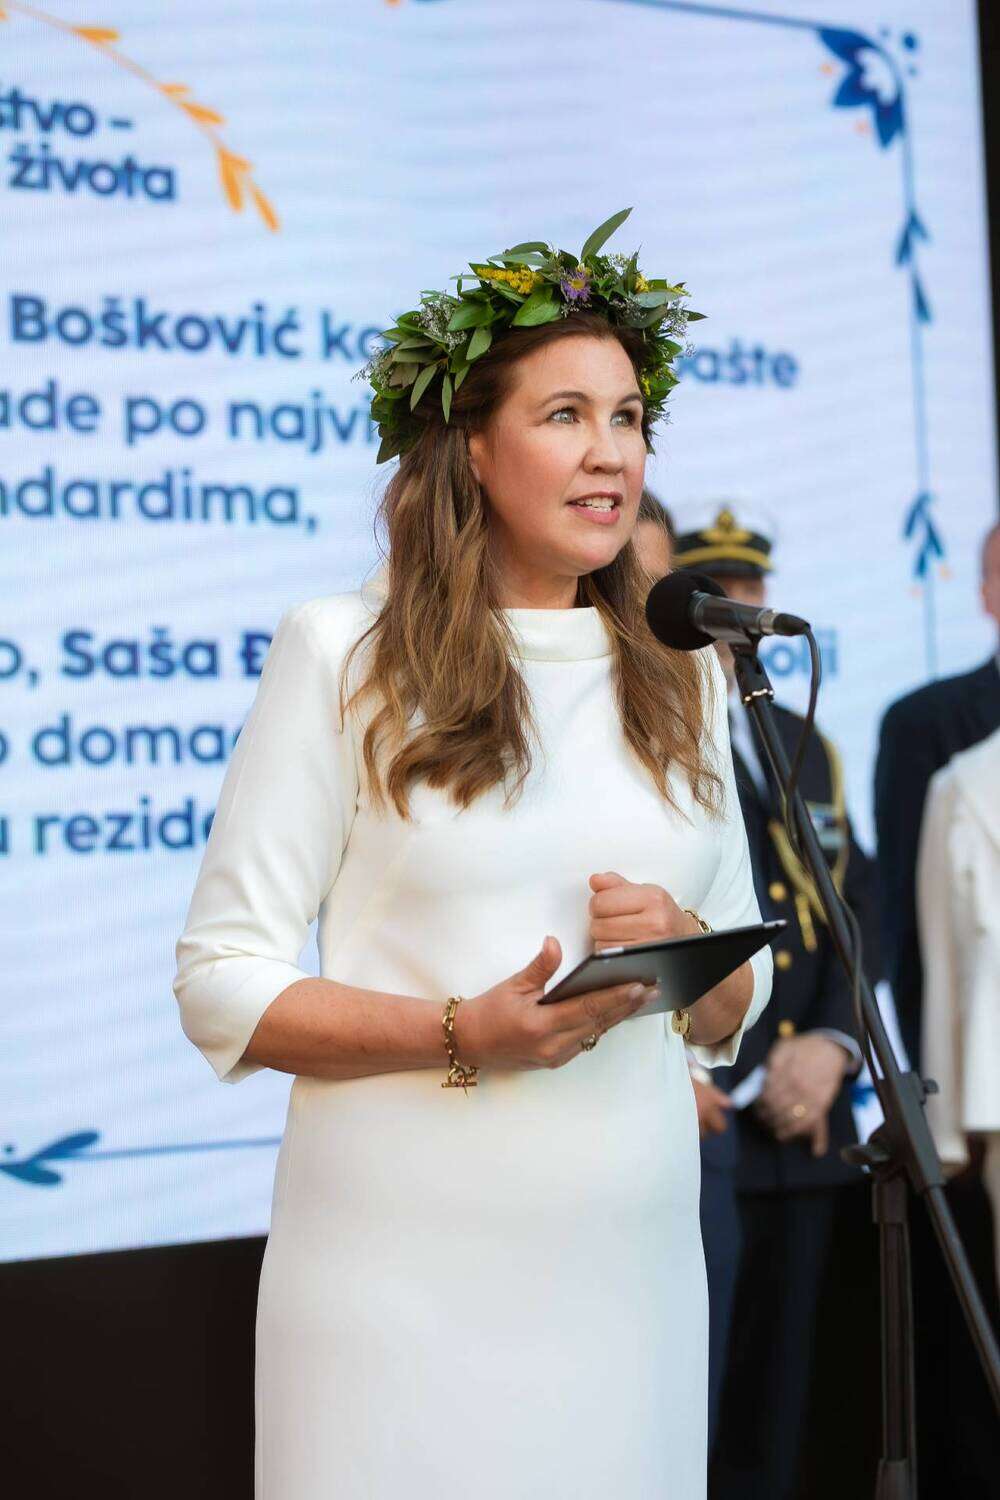 Zeleno društvo na švedski način - foto Ambasada Švedske u Srbiji